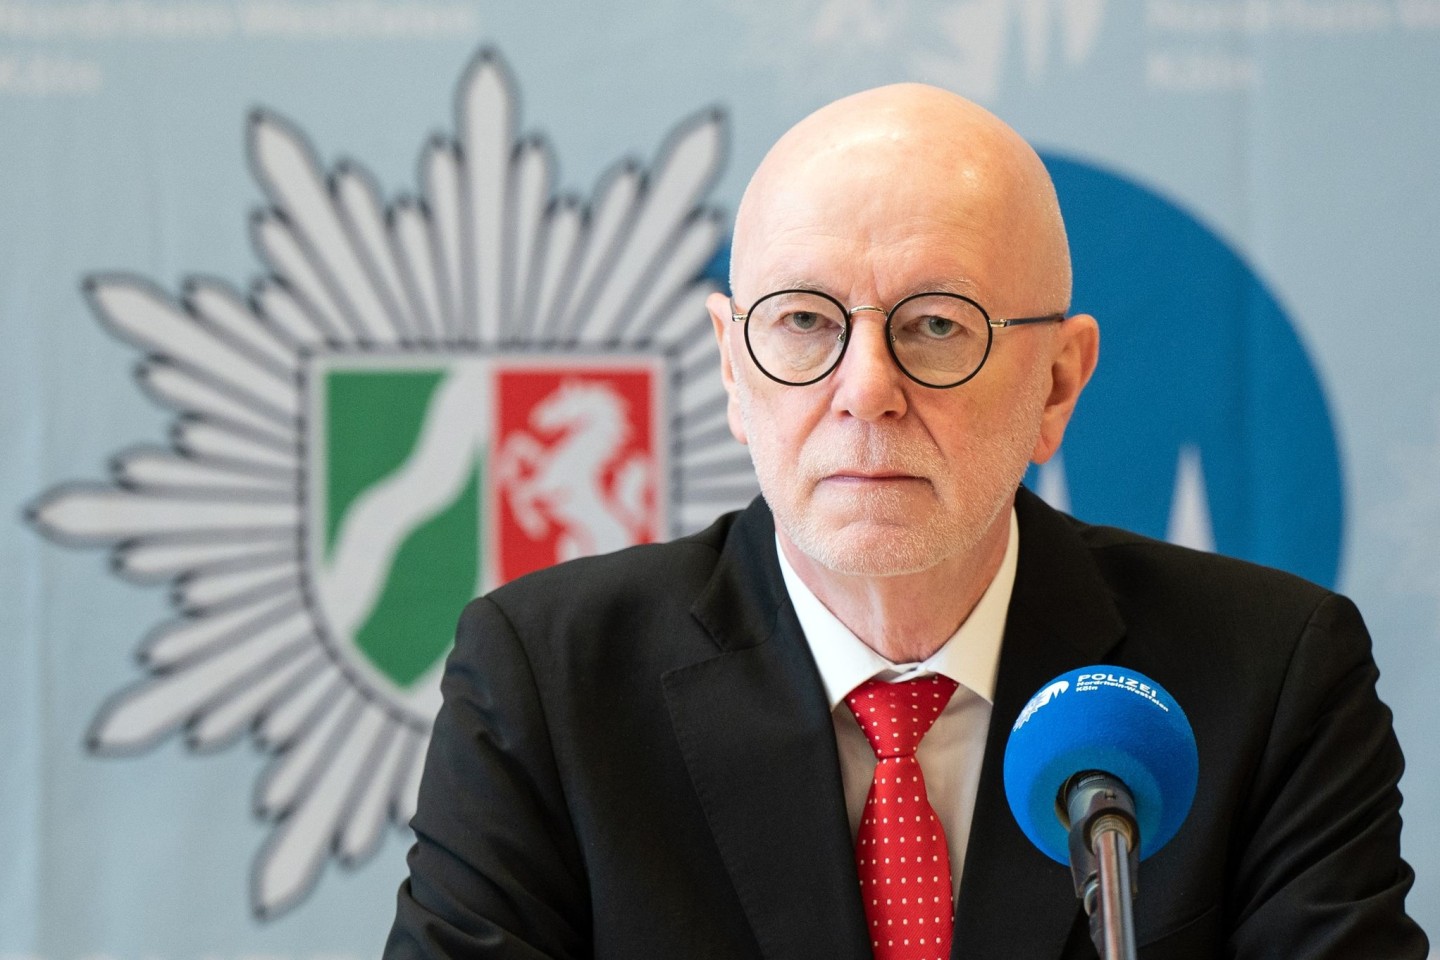 Der Kölner Polizeipräsident Uwe Jacob erläuterte die Ergebnisse der Emittler im Missbrauchskomplex Bergisch Gladbach.